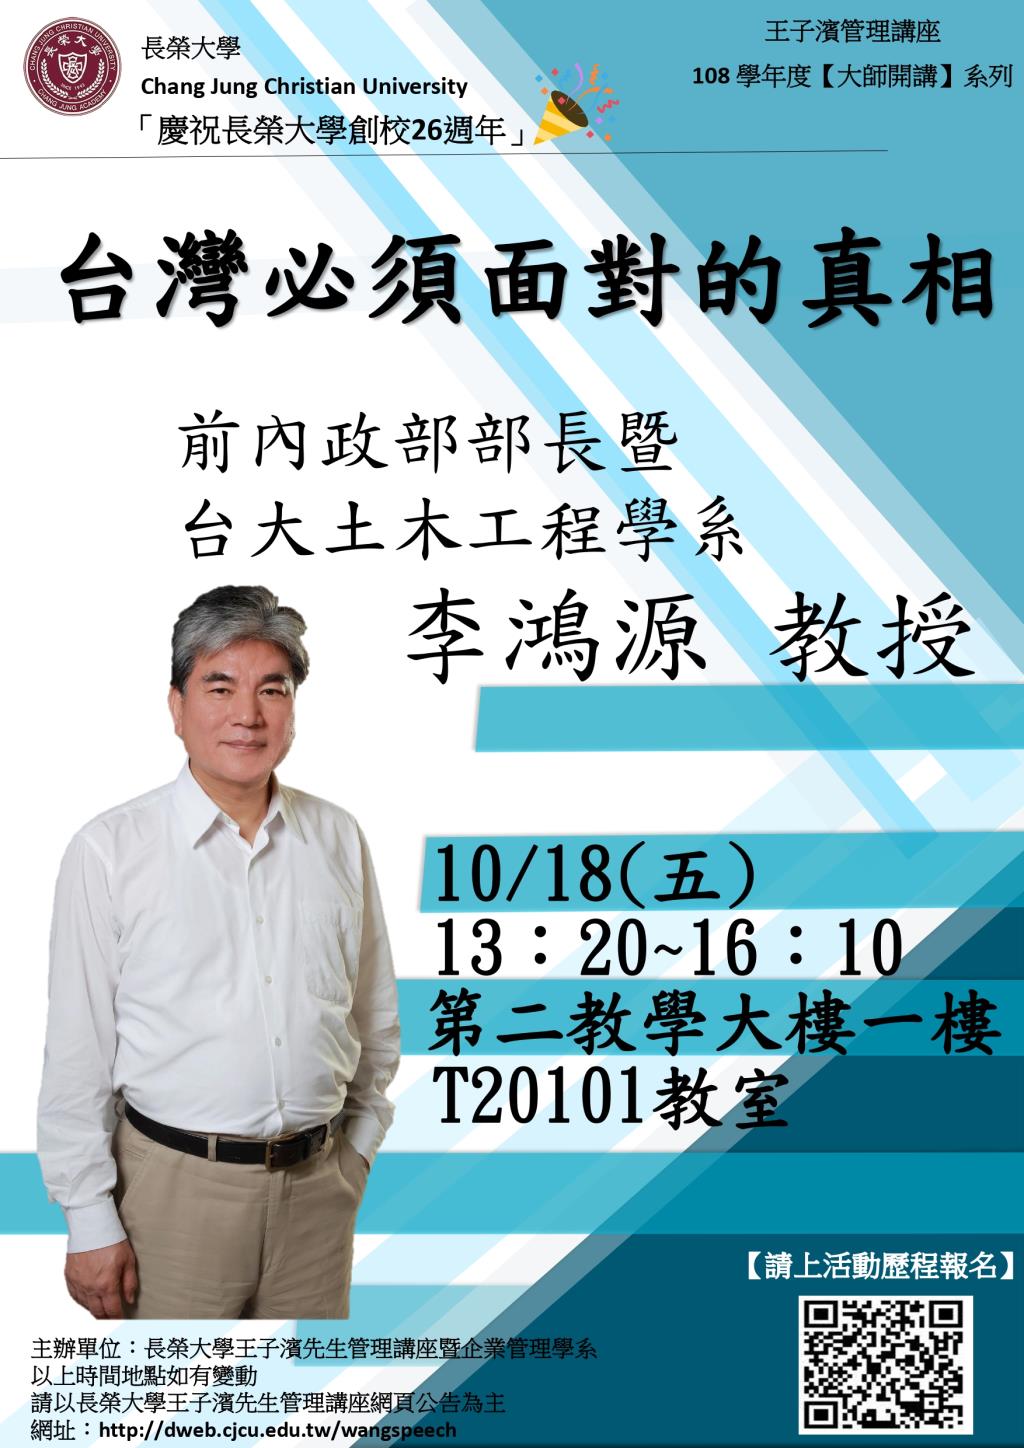 敬邀參加本週五下午(10/18)王子濱先生管理講---台大土木工程學系 李鴻源教授